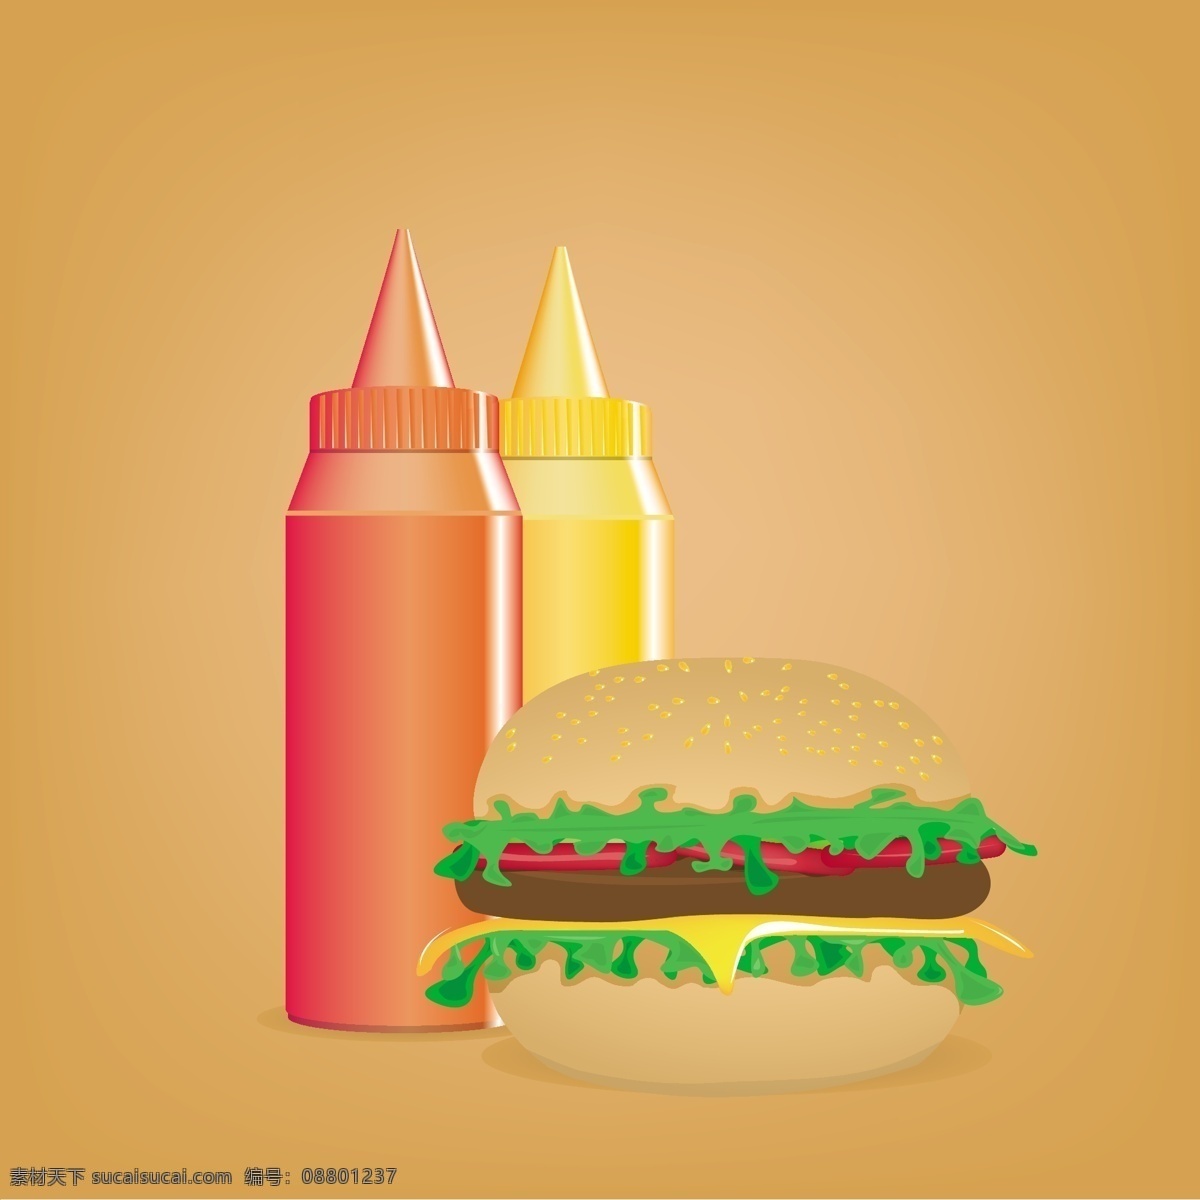 卡通 汉堡包 插画 矢量 模板下载 美食插画 快餐美食 卡通食物 餐饮美食 生活百科 矢量素材 橙色